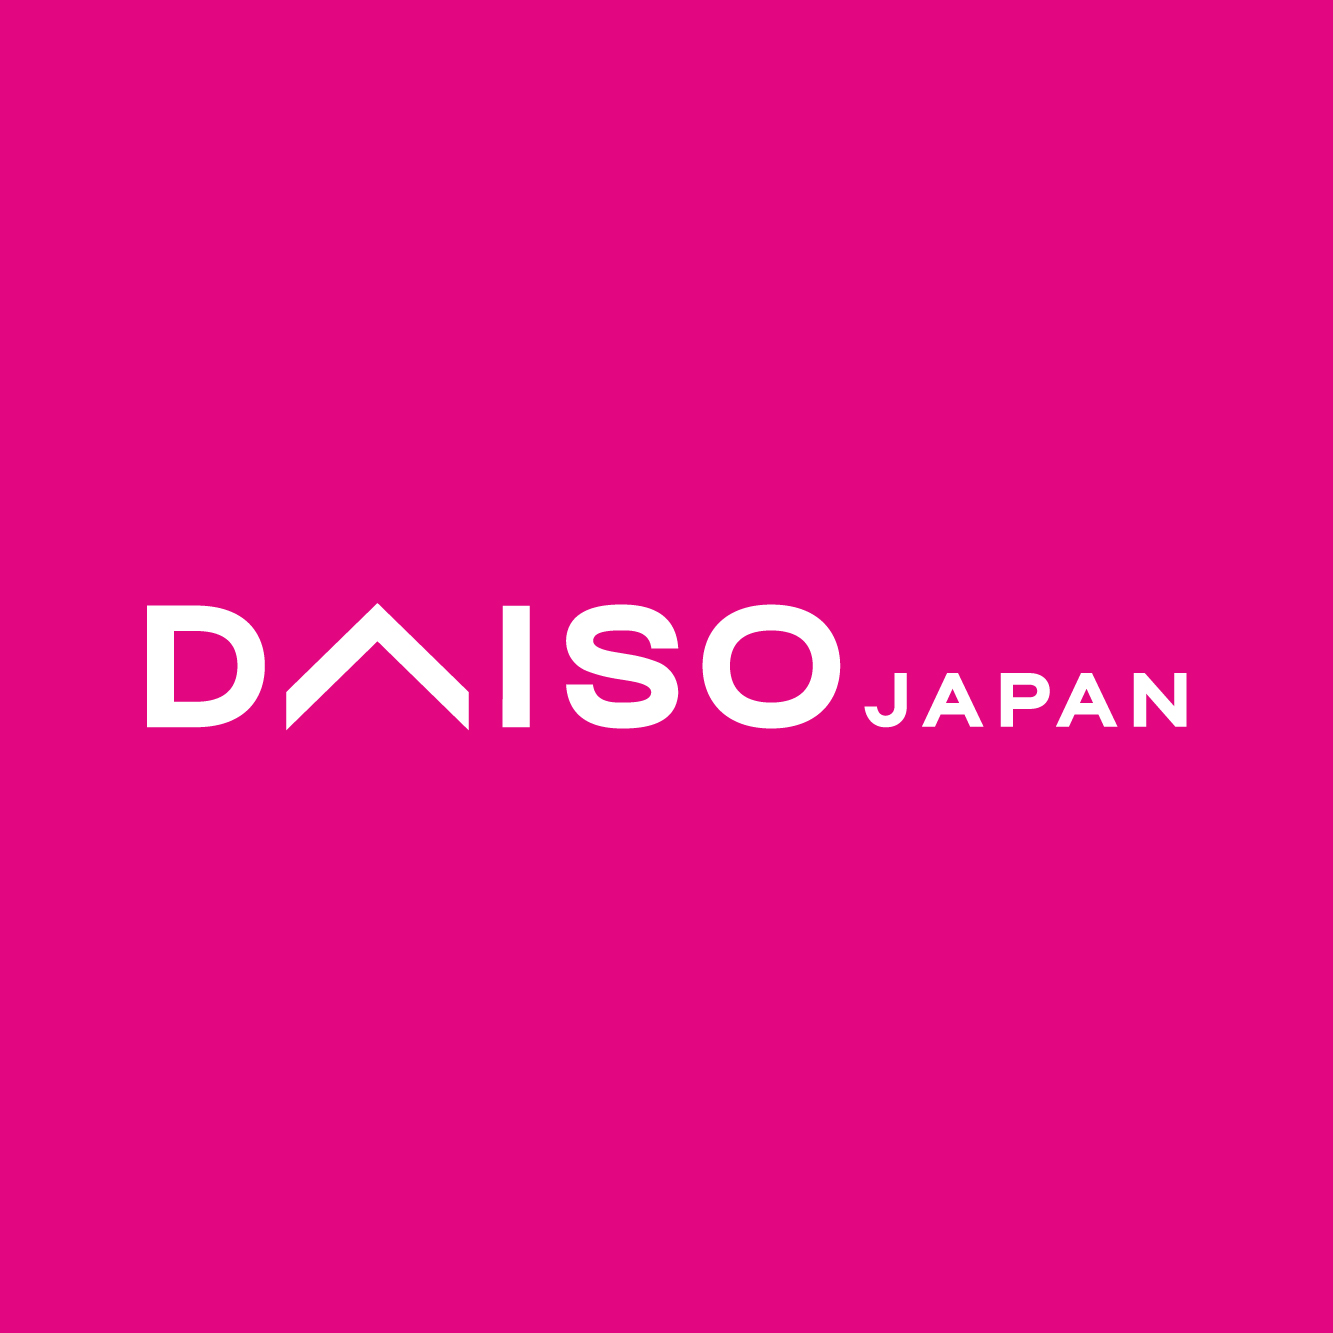 Daiso logo_320x320.jpg